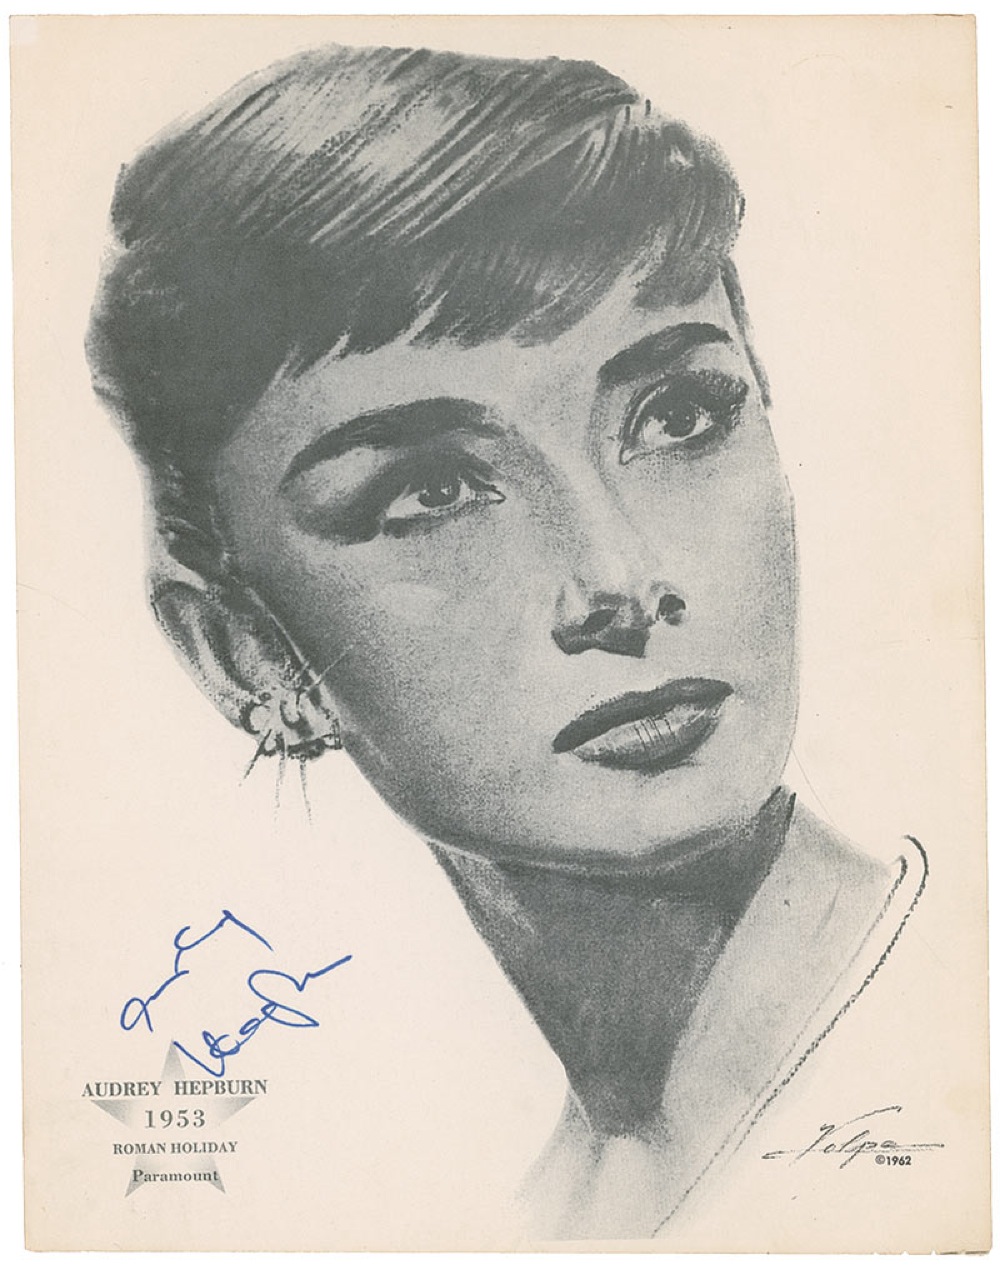 Lot #488 Volpe: Audrey Hepburn